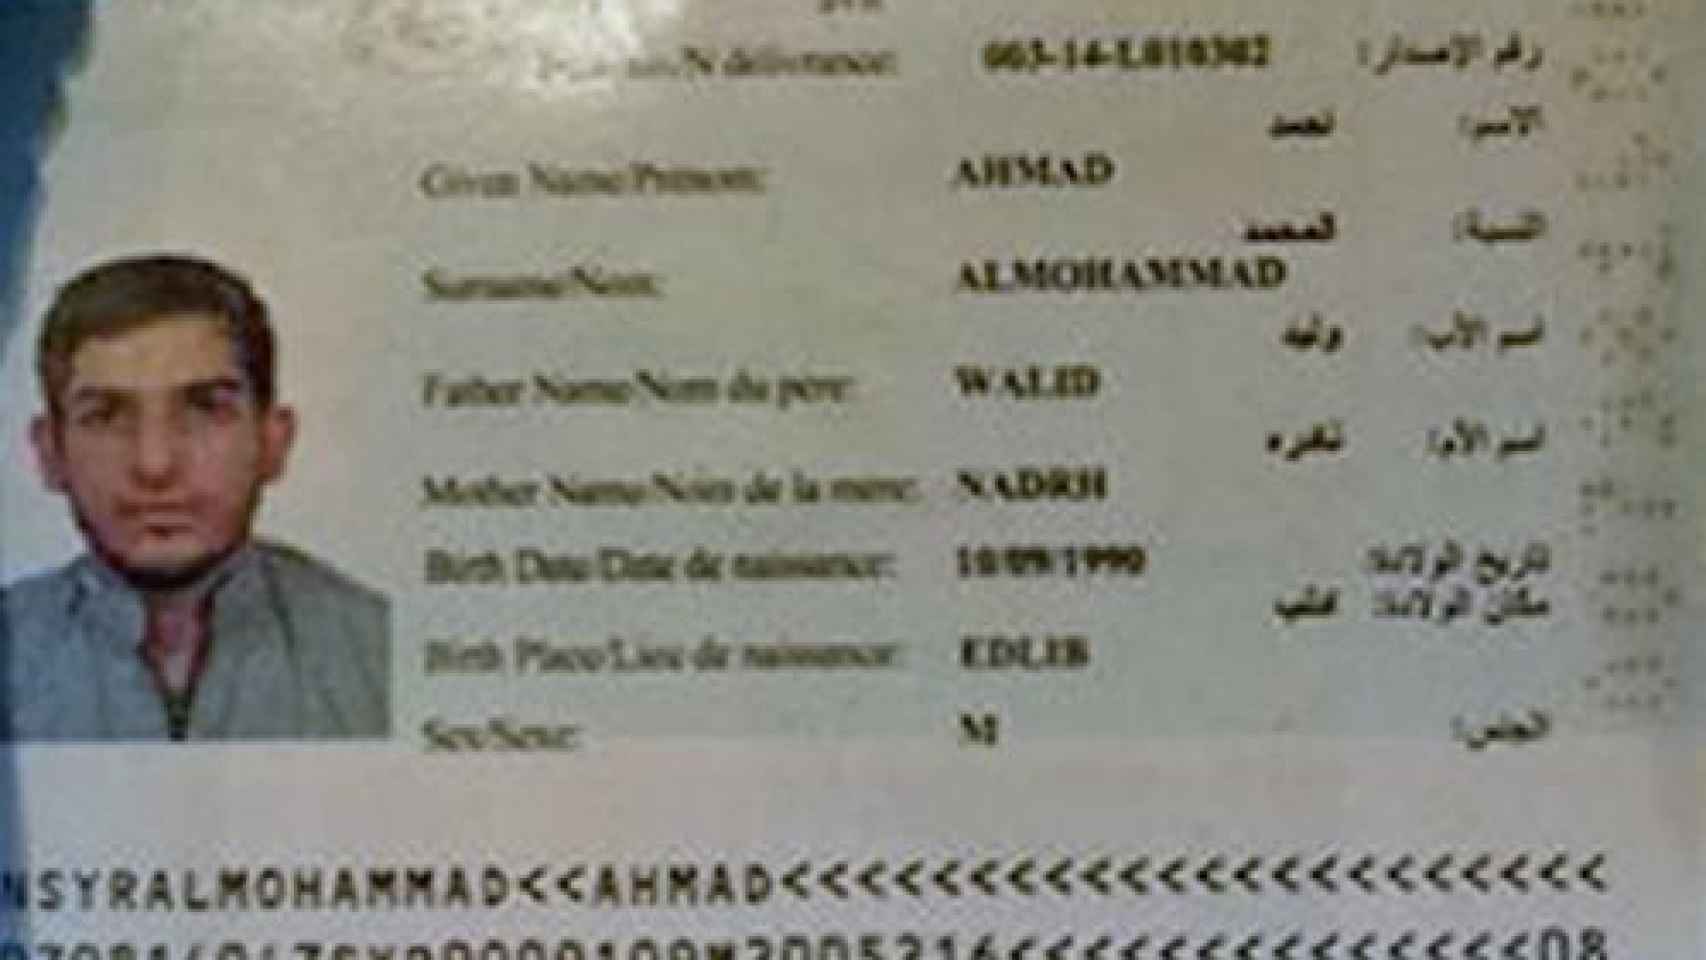 Pasaporte encontrado en una de las explosiones del Stade de France